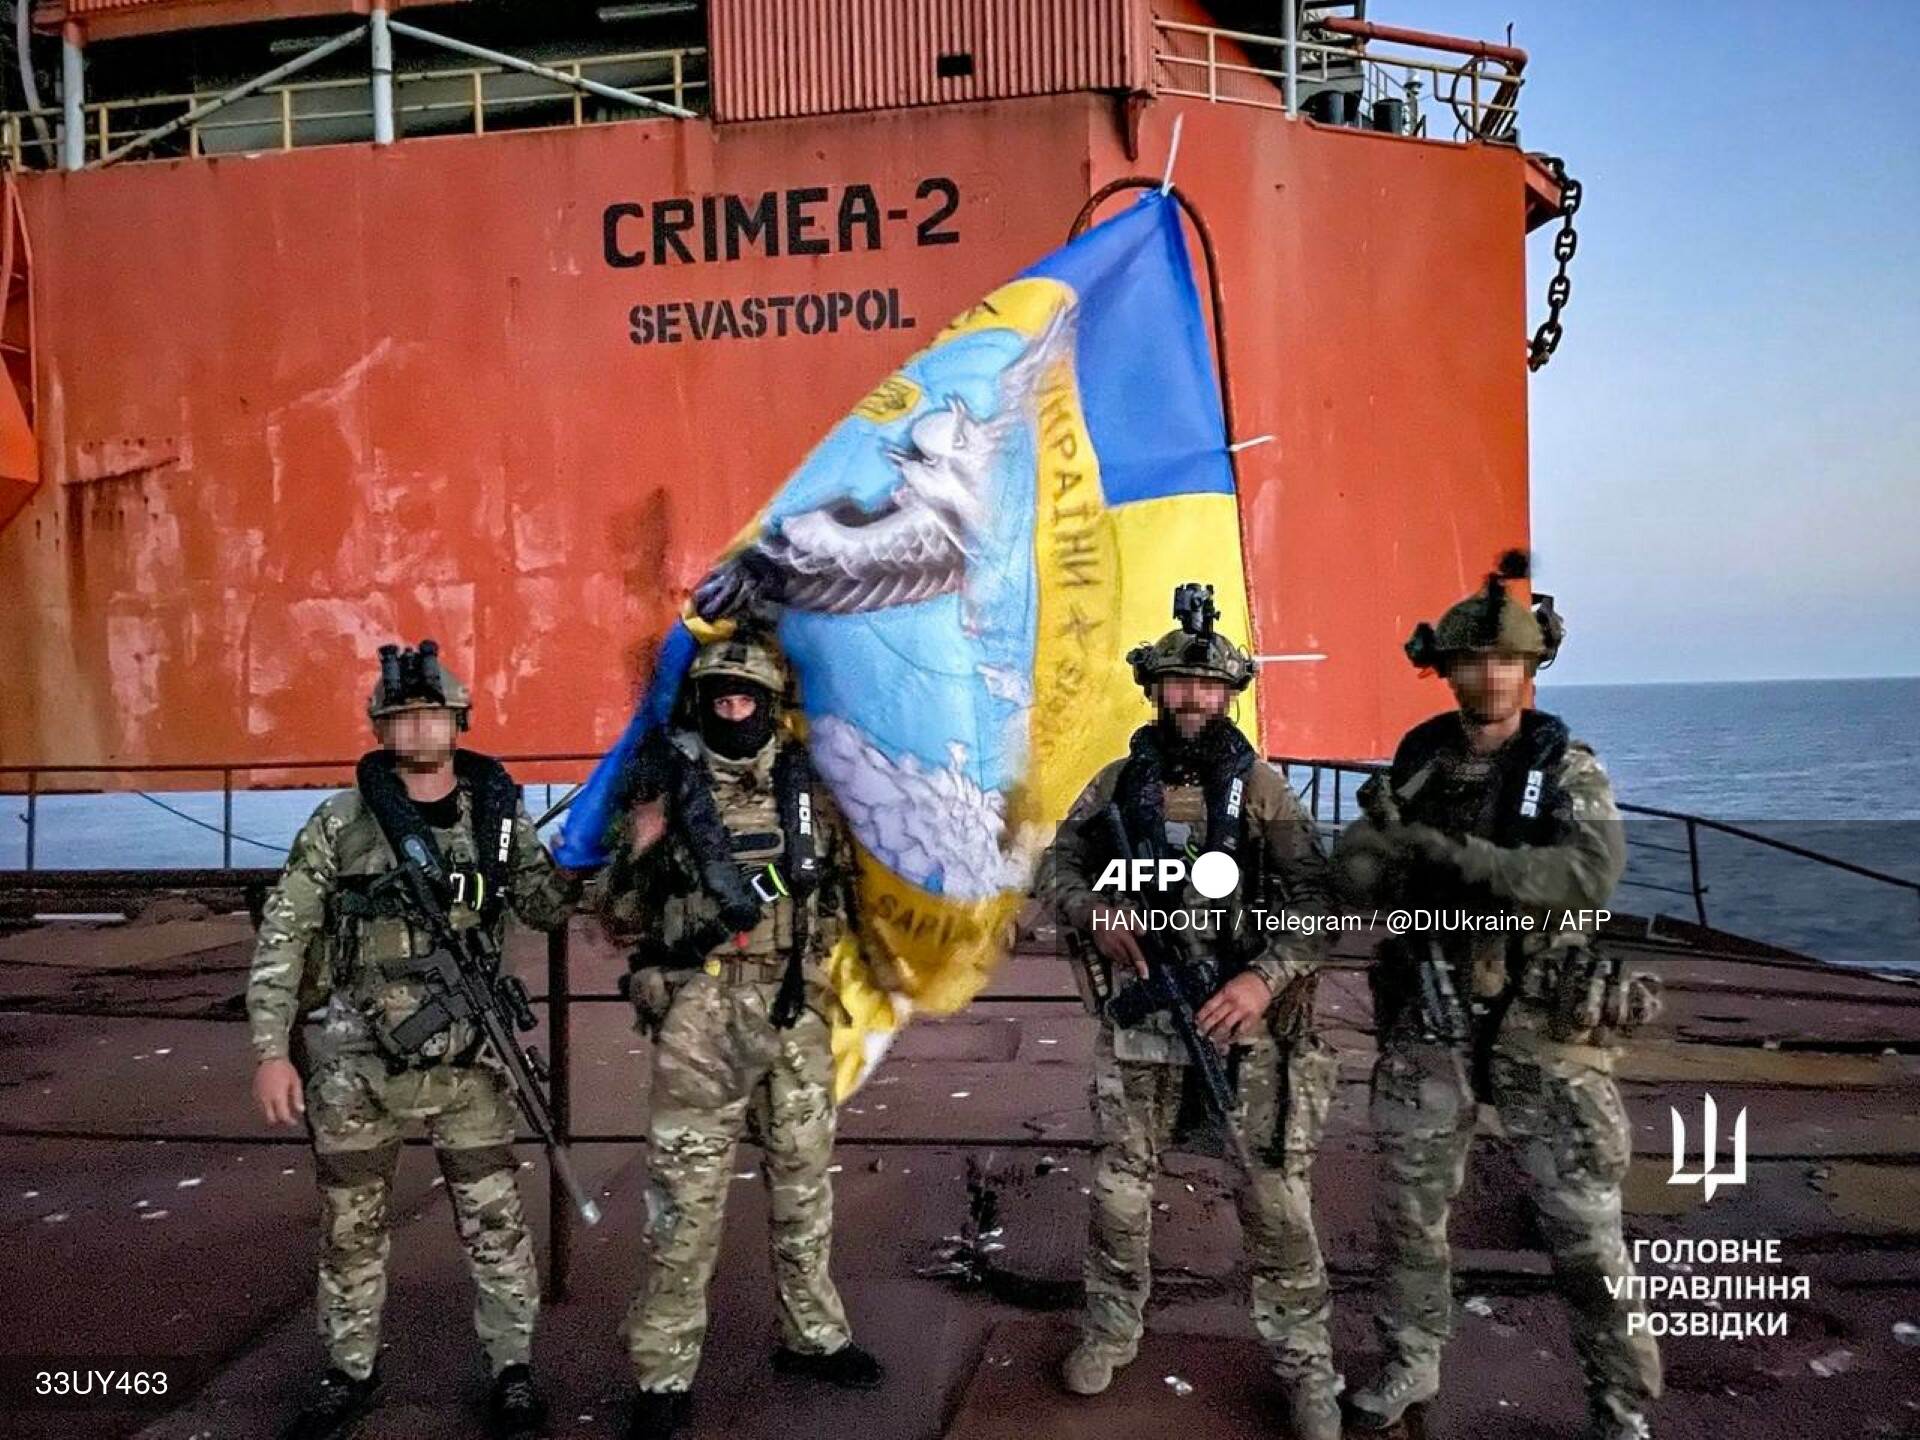 czterech komandosów z ukraińską flagą, w tle platforma wiertnicza z napisem Crimea 2 Sevastopol